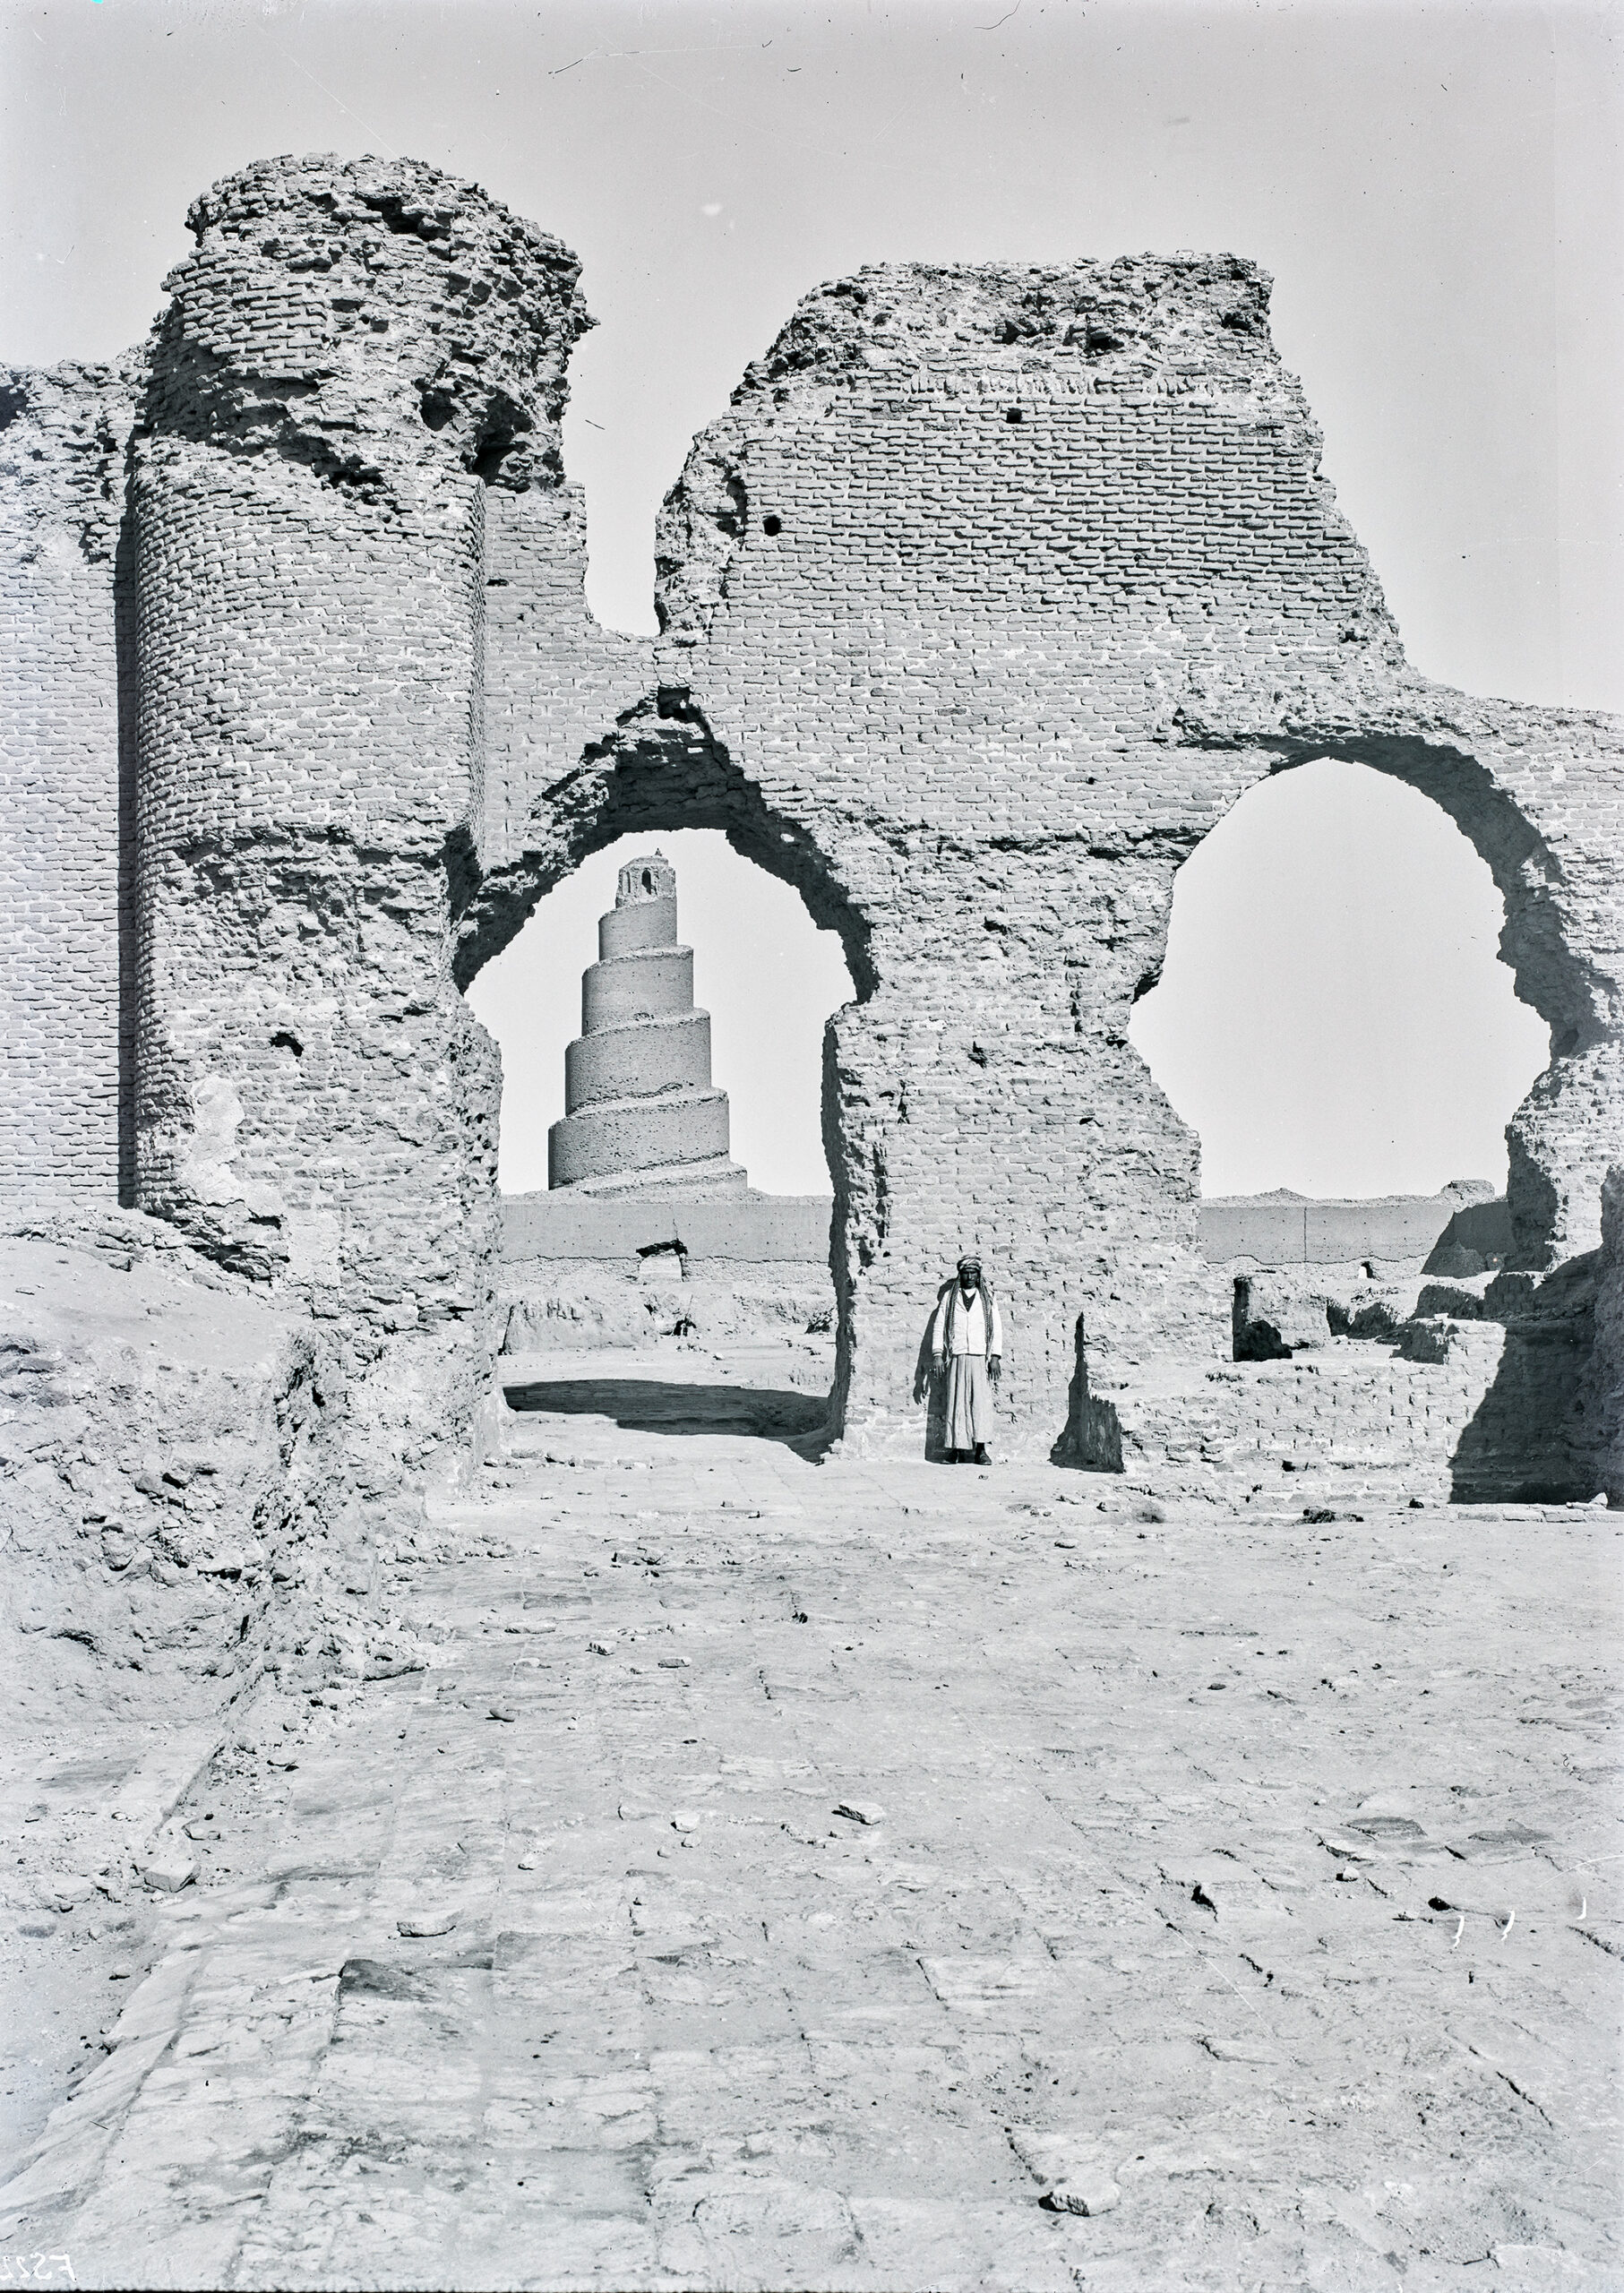 Südfront der Großen Moschee in Samarra, von der nur noch die Wände erhalten sind.